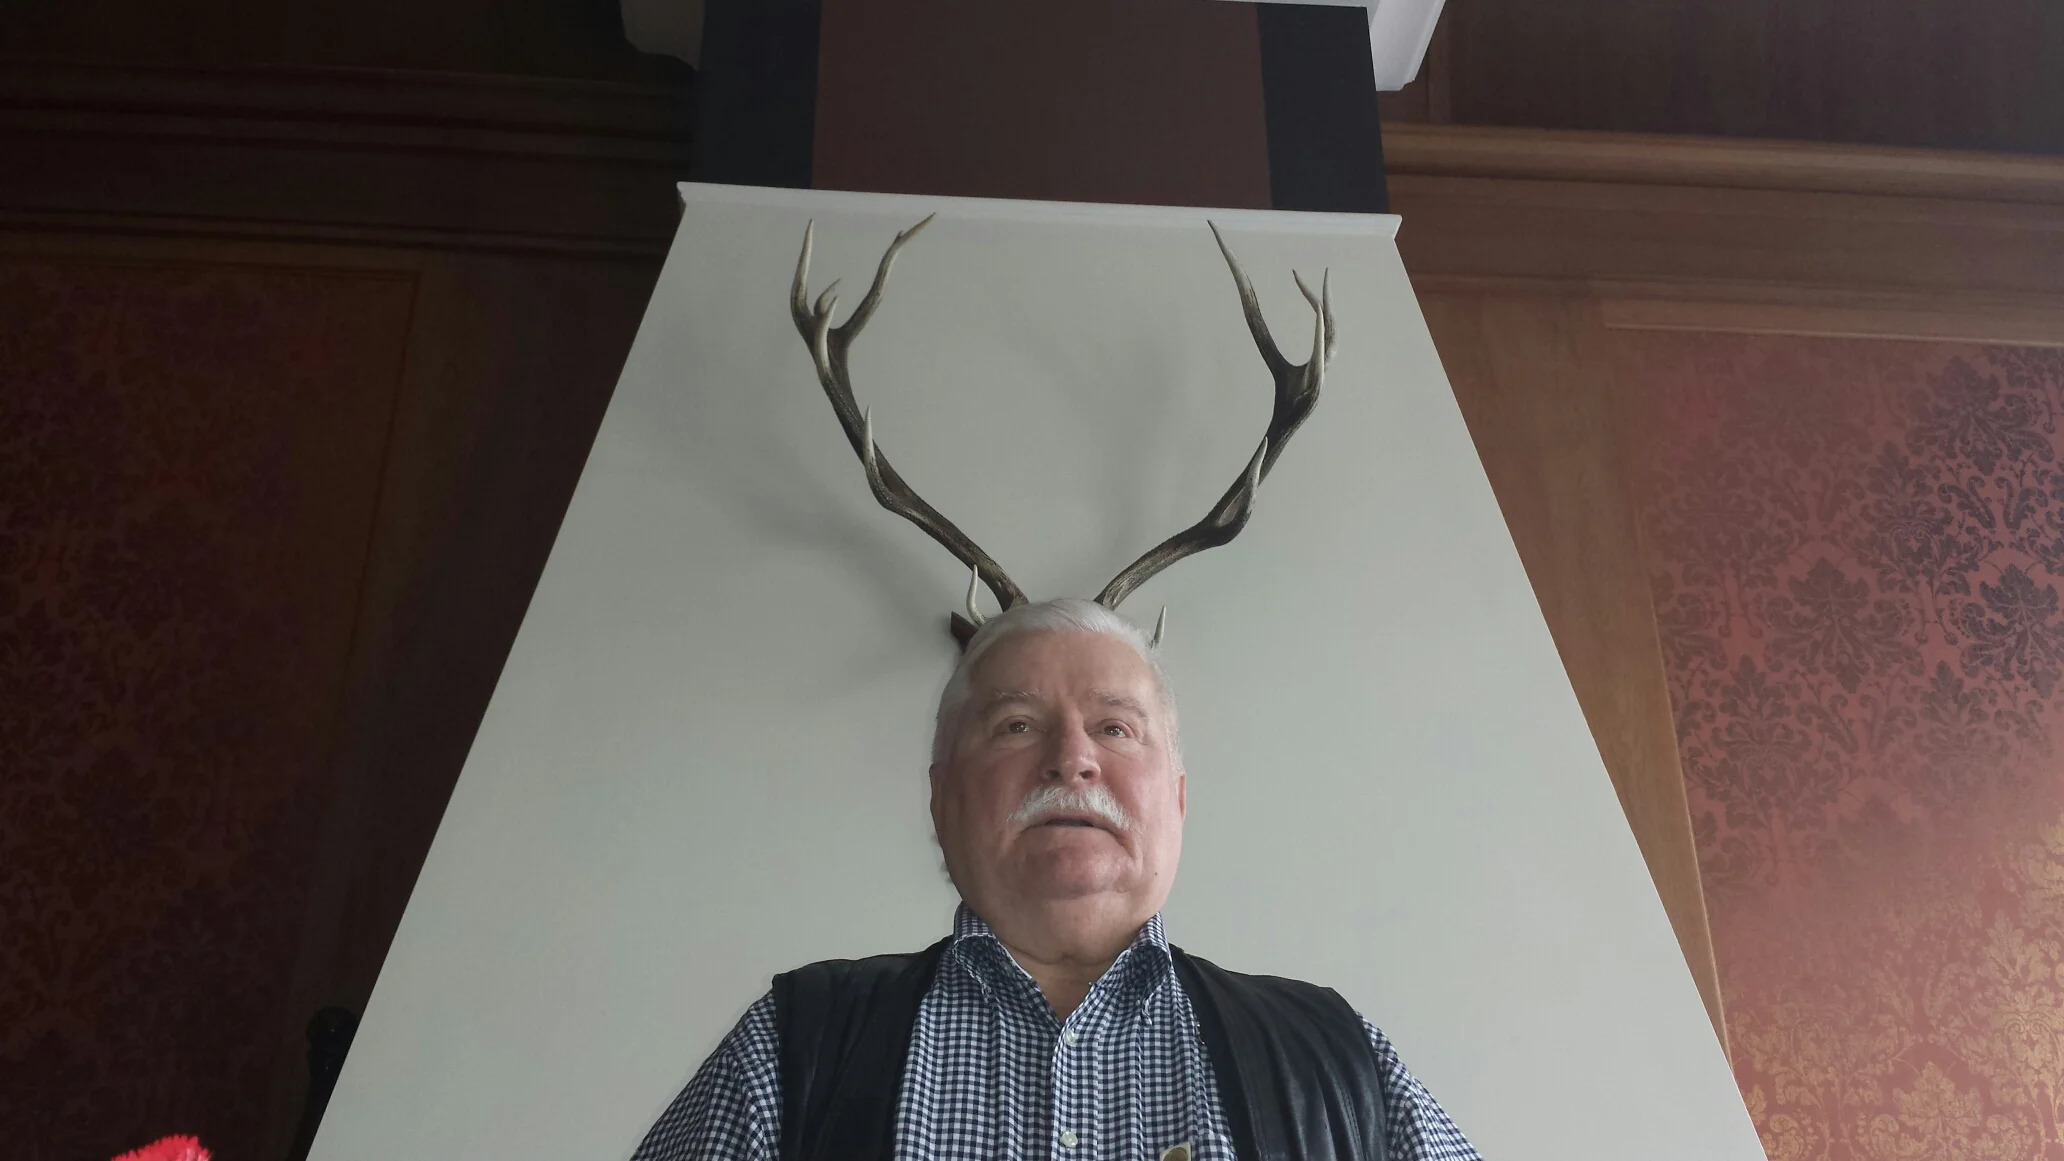 President Lech Wałęsa posing with deer or moose horns behind his head.